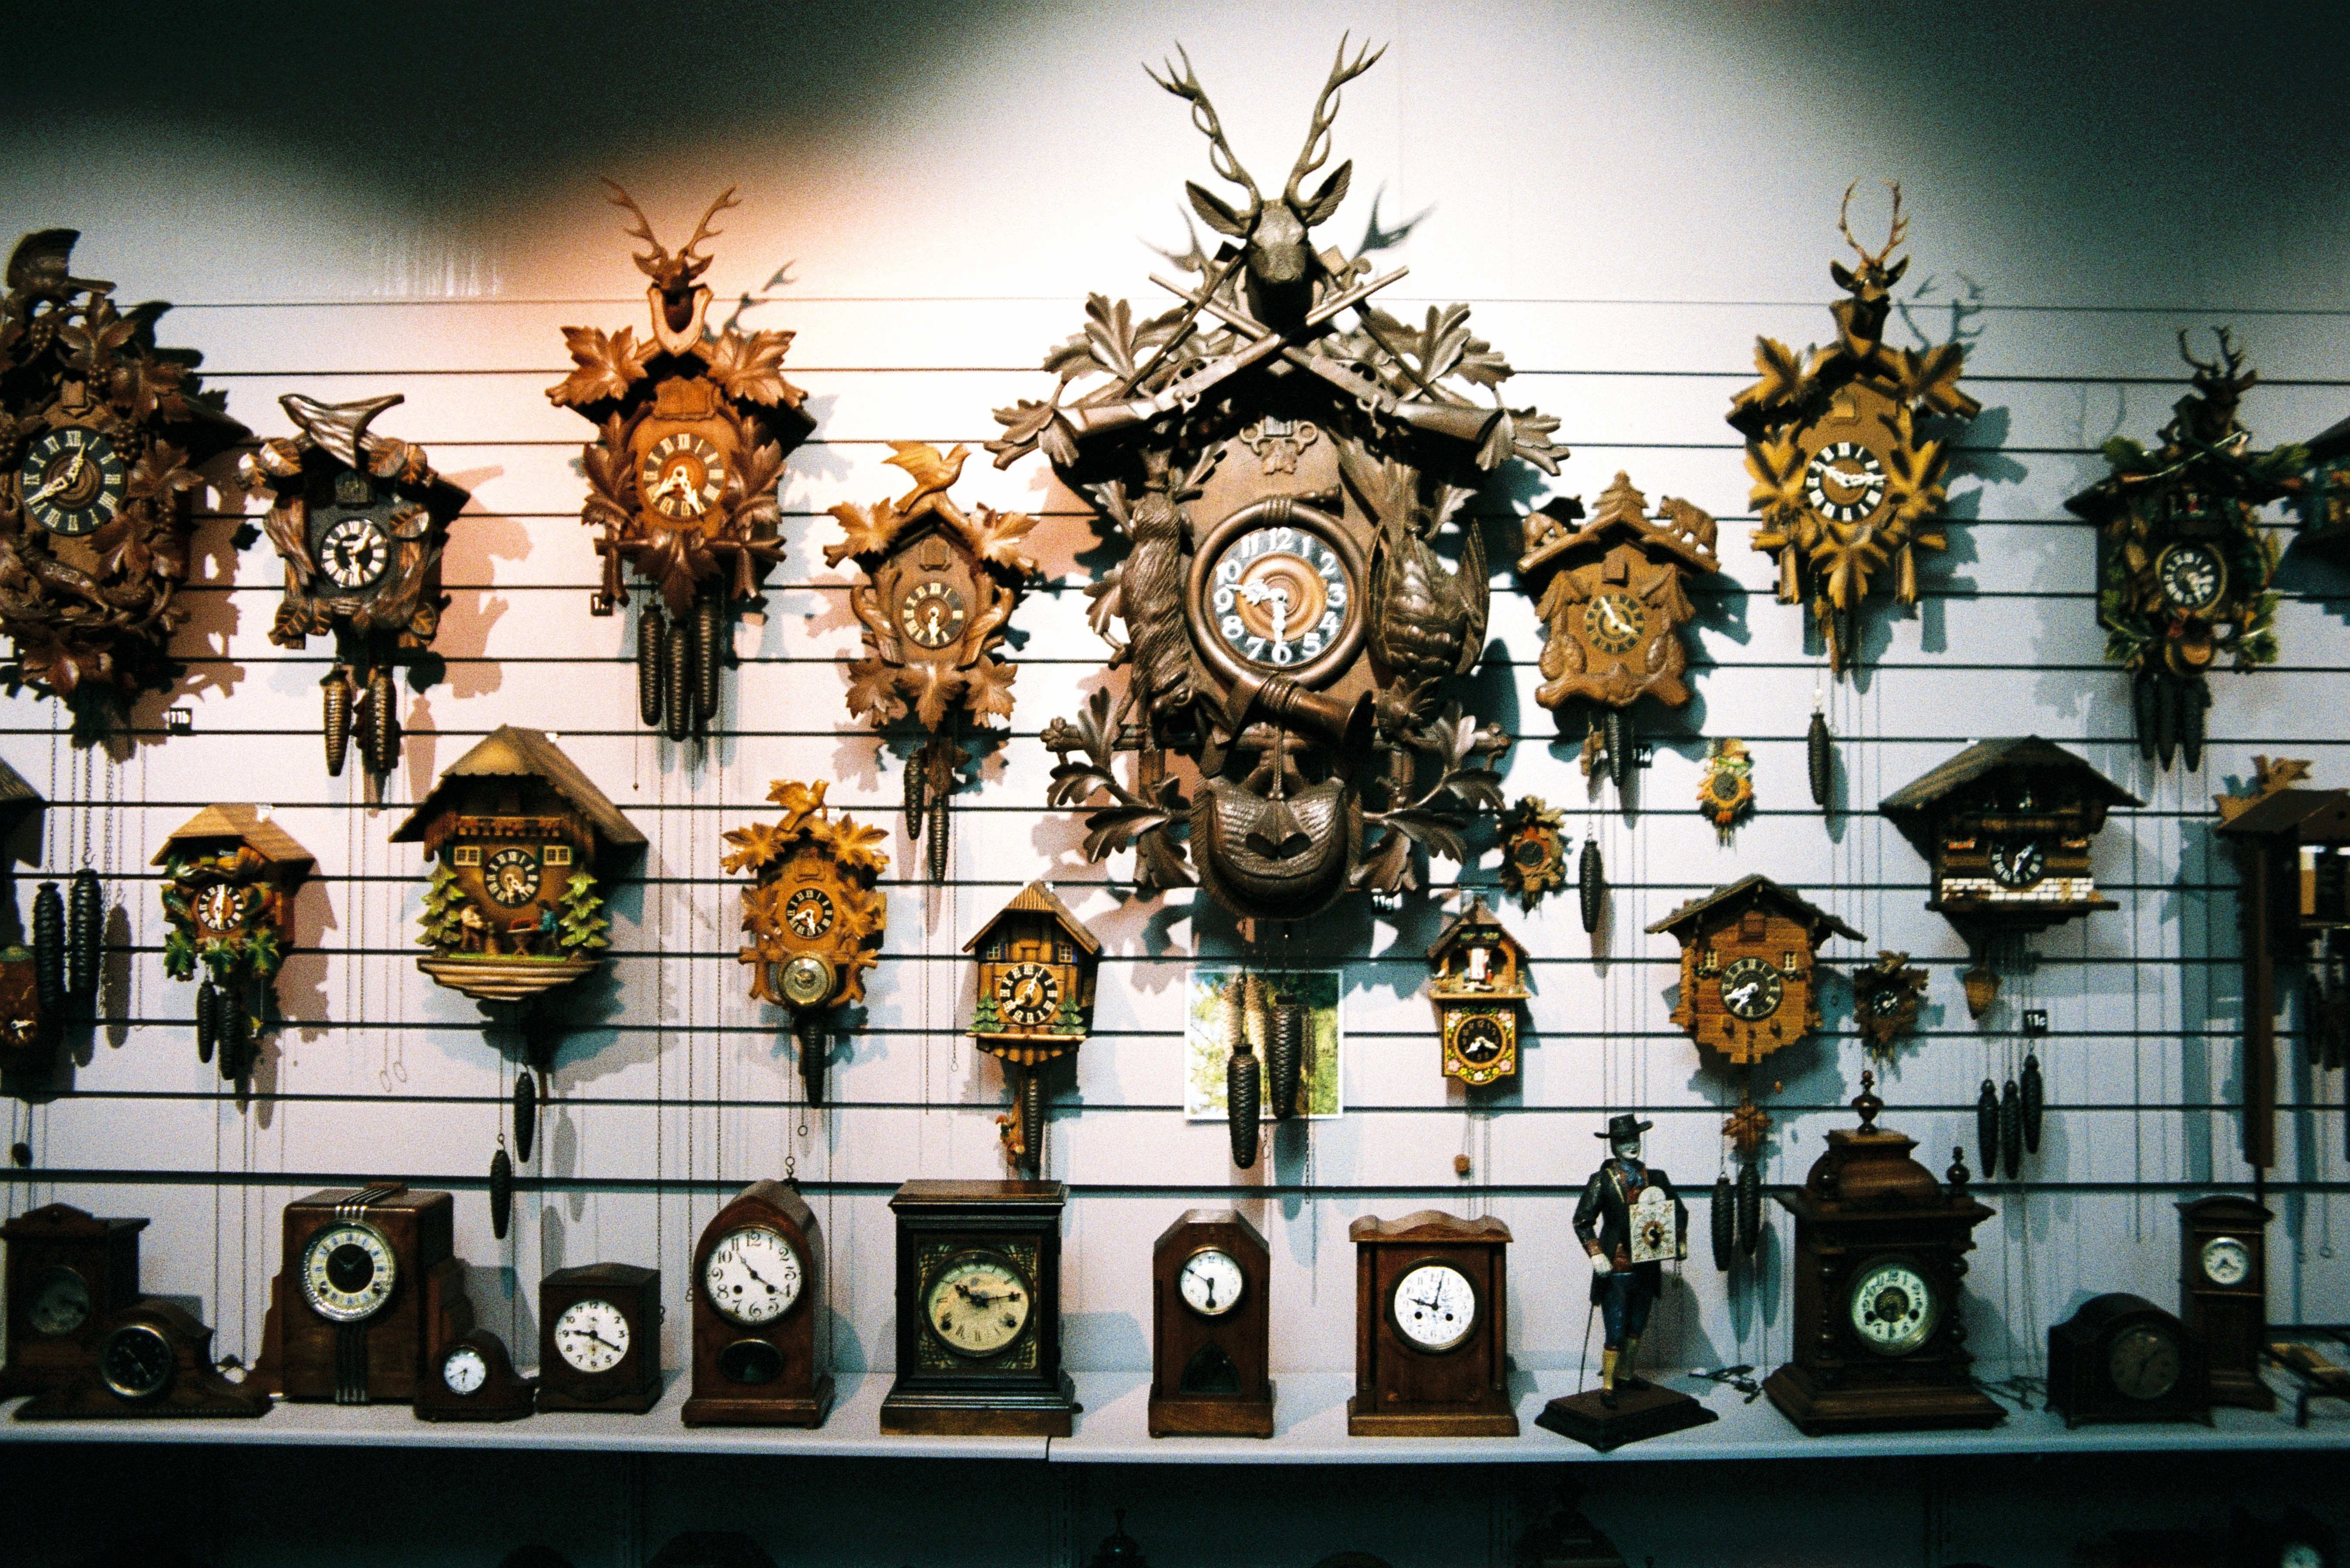 Clapham Clock Museum